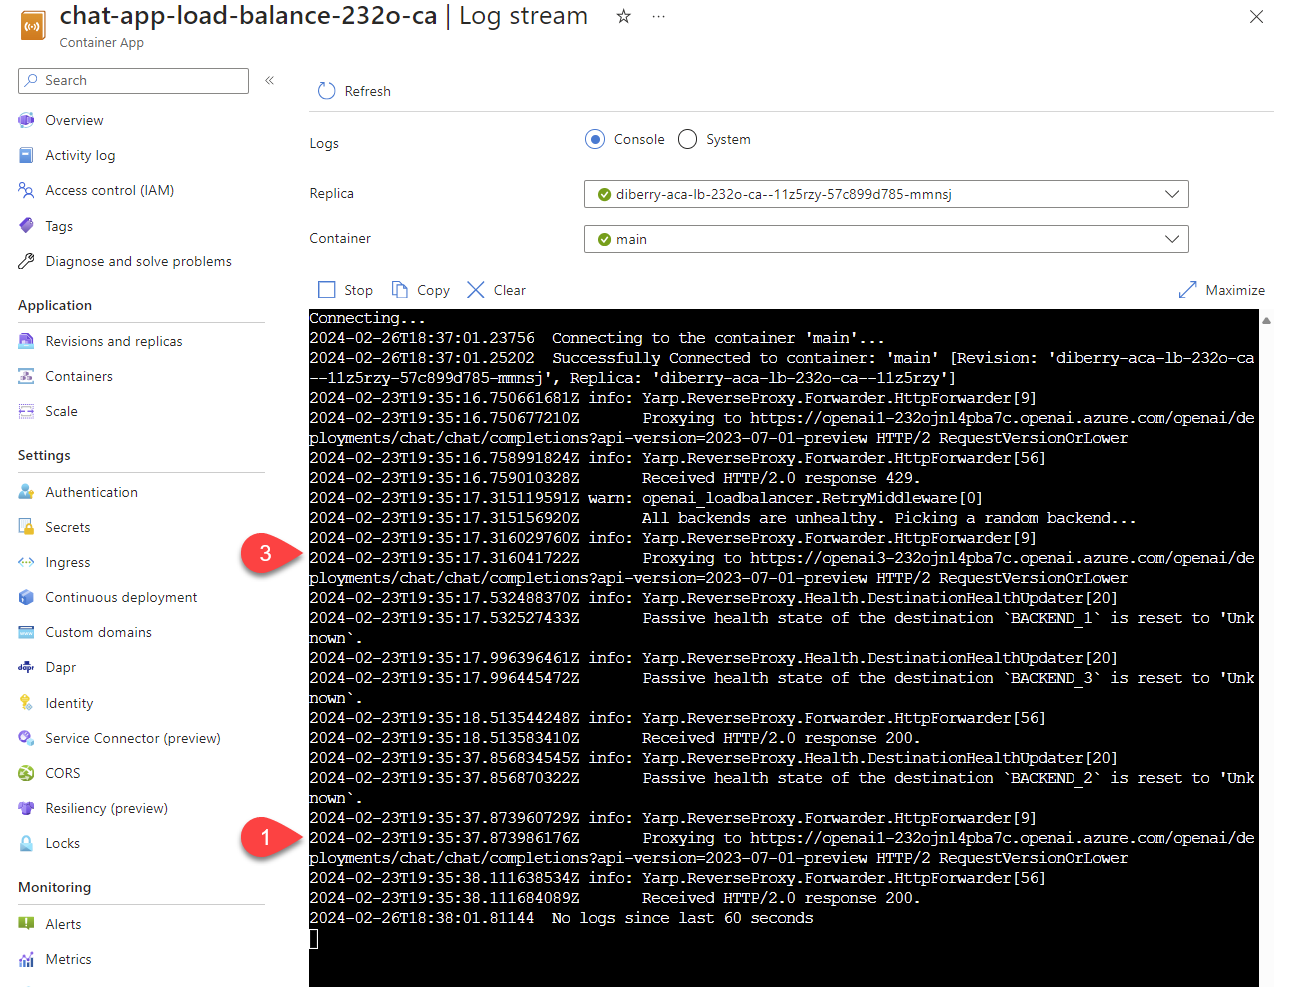 Schermopname van streaminglogboeken van Azure Container App met twee logboeklijnen die de opmerking van het logboek demonstreren. 